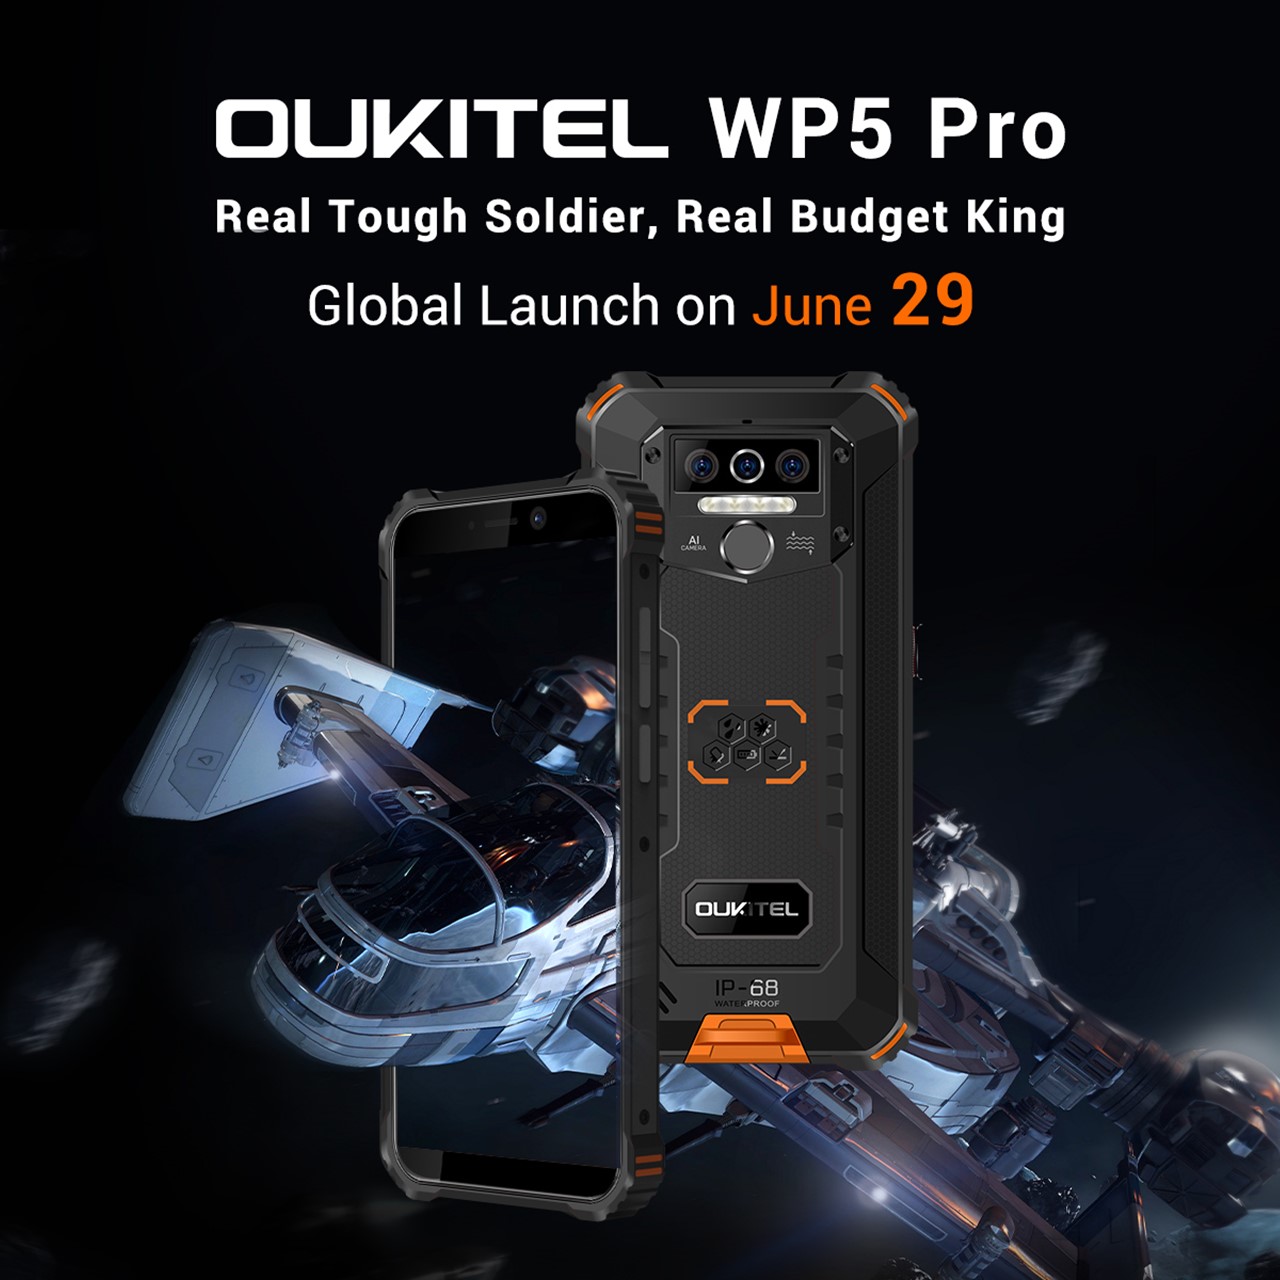 OUKITELがLTE B19対応の廉価タフネススマホ「WP5 Pro」と約1万円程度の「C19」を発表